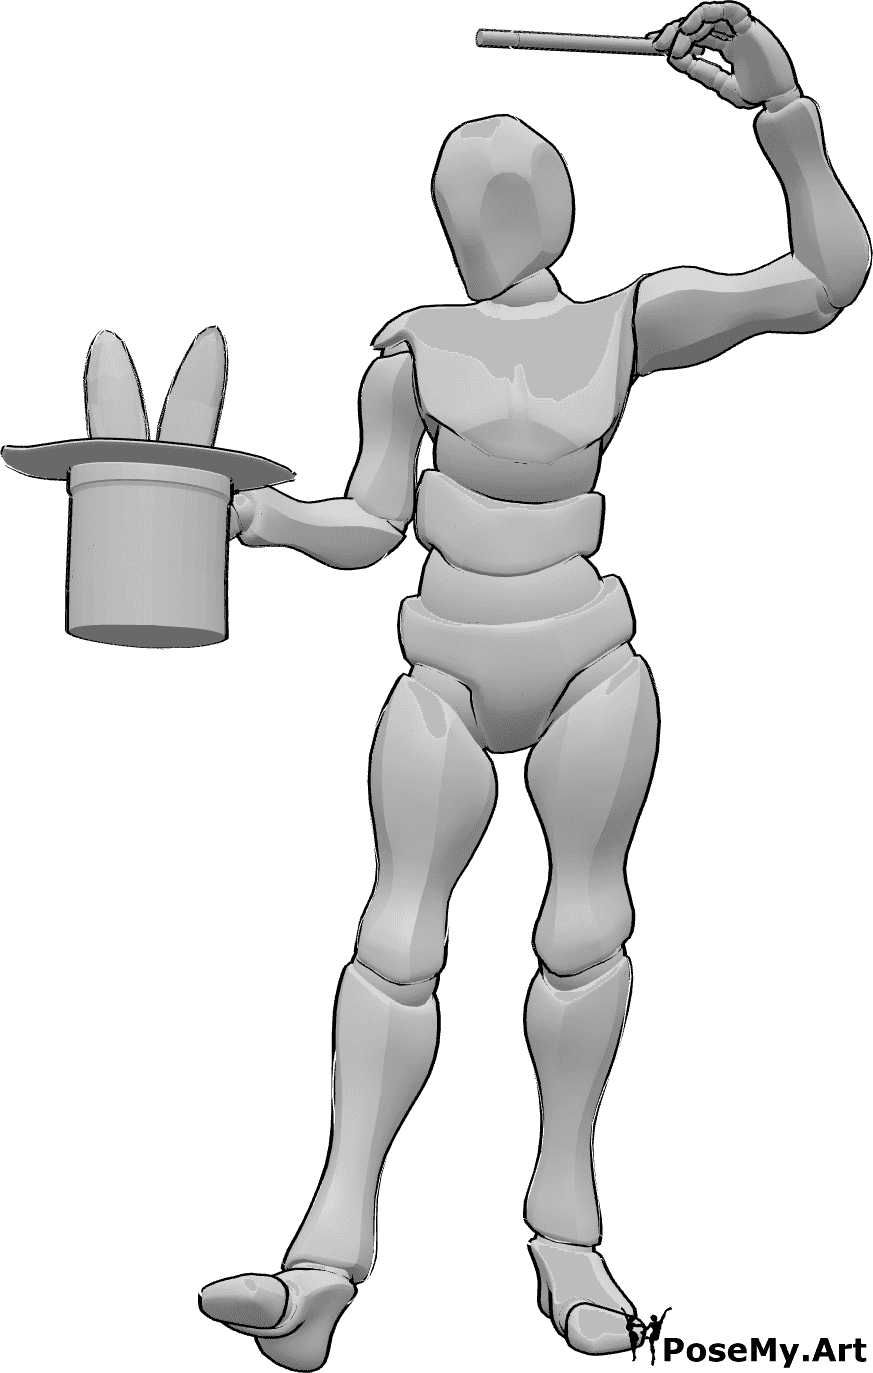 Référence des poses- Conjurer la pose du lapin - Un magicien masculin fait de la magie et fait sortir un lapin de son chapeau de magicien avec sa baguette.